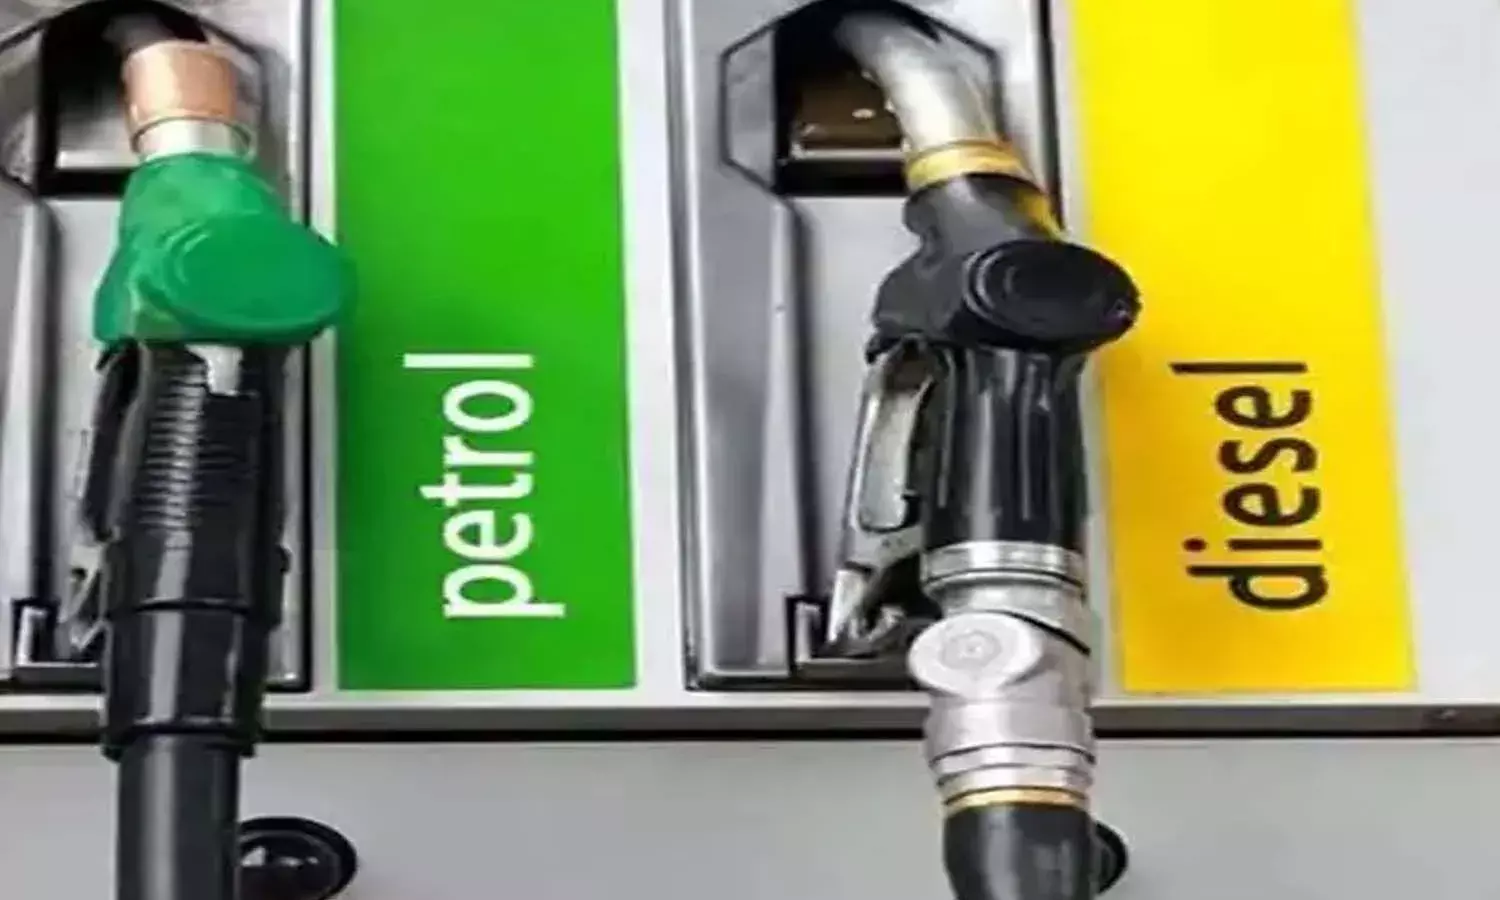 Petrol-Diesel Aaj ka Rate : तेल कंपनियों ने जारी की पेट्रोल-डीजल की नई प्राइस लिस्ट, जानें क्या है आज की दरें